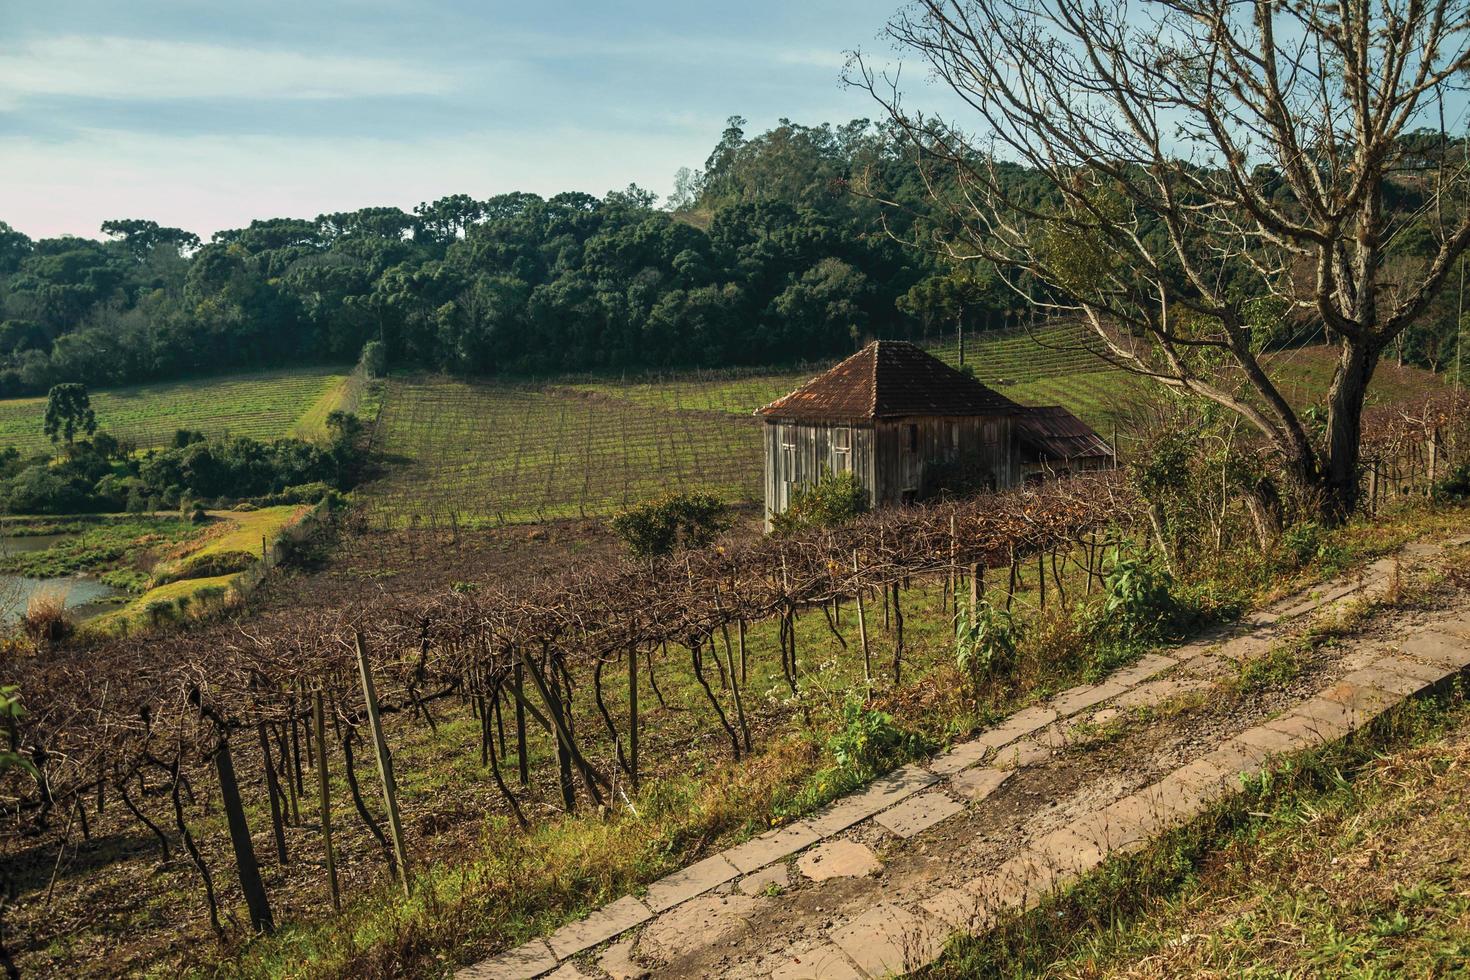 paysage rural avec ancienne ferme au milieu des vignes entourée de collines boisées près de bento goncalves. une ville de campagne sympathique dans le sud du brésil célèbre pour sa production de vin. photo